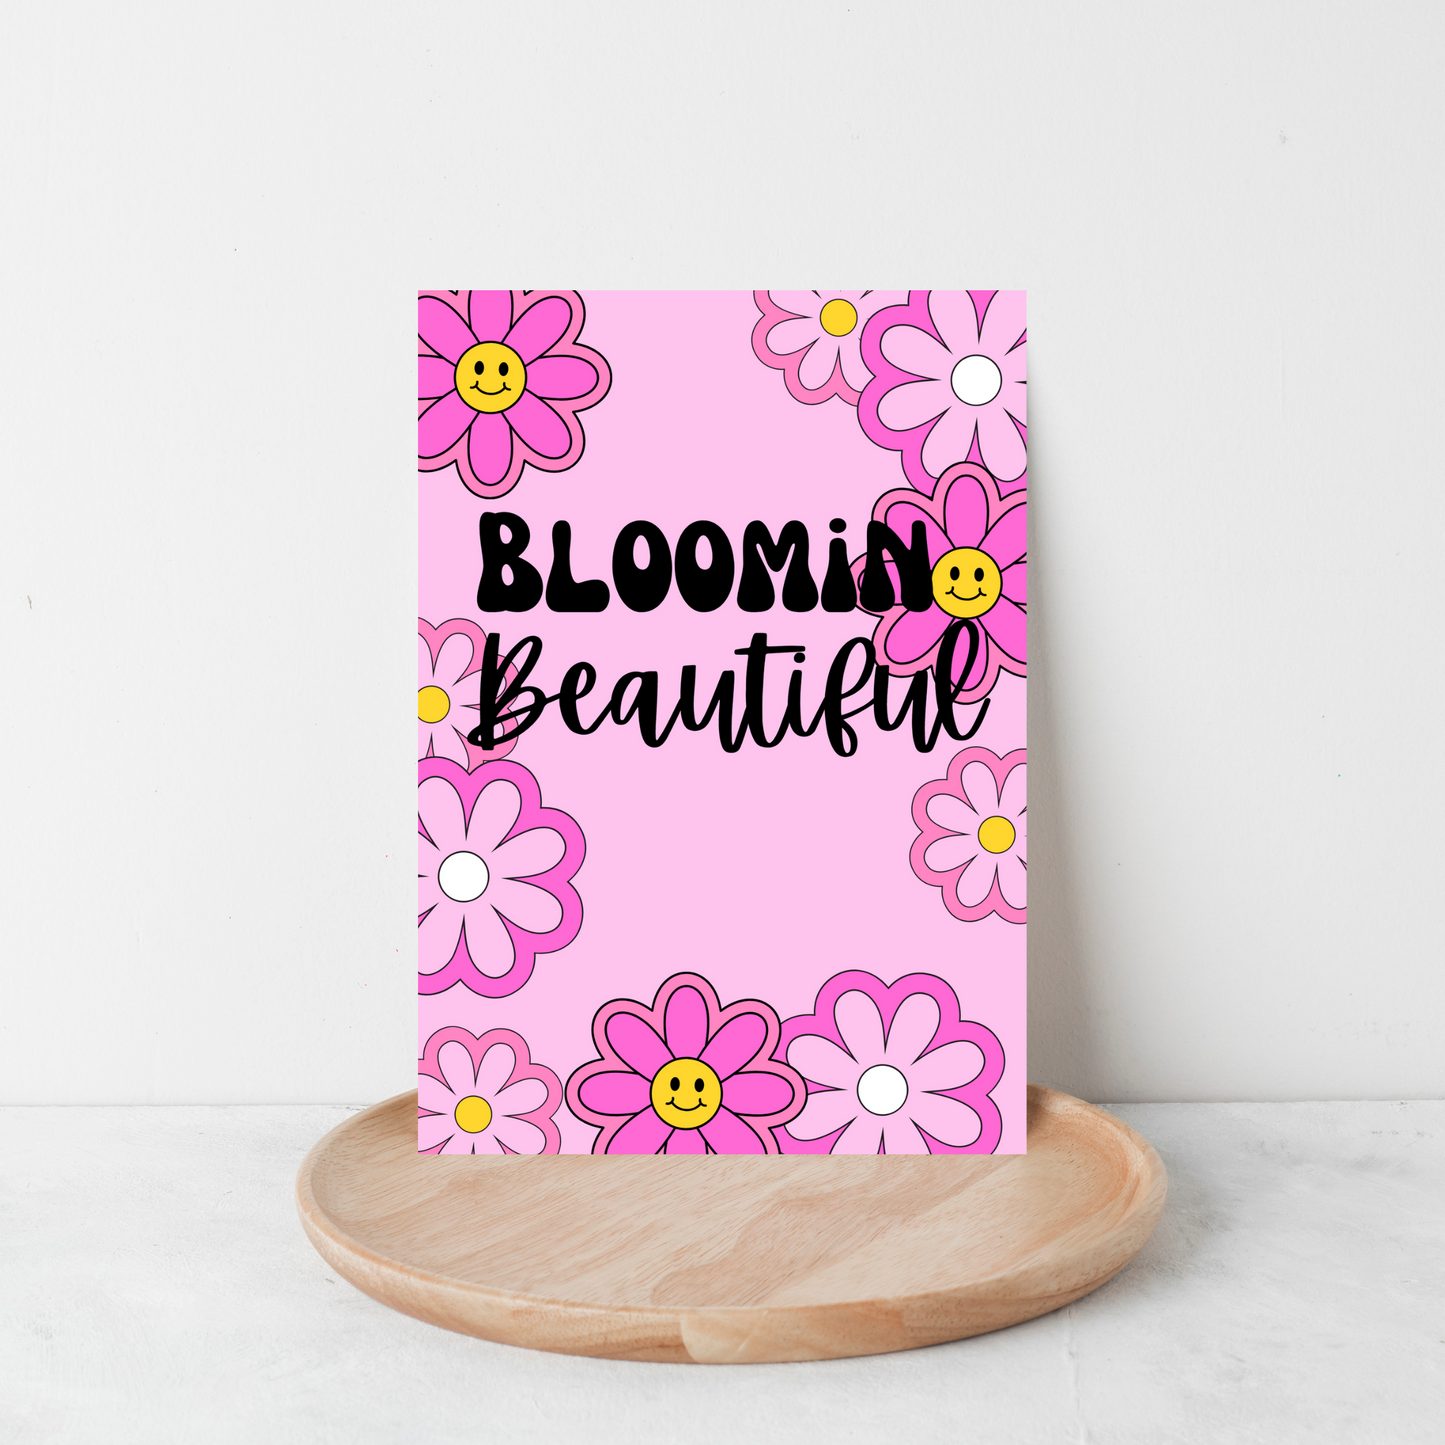 Bloomin’ Beautiful